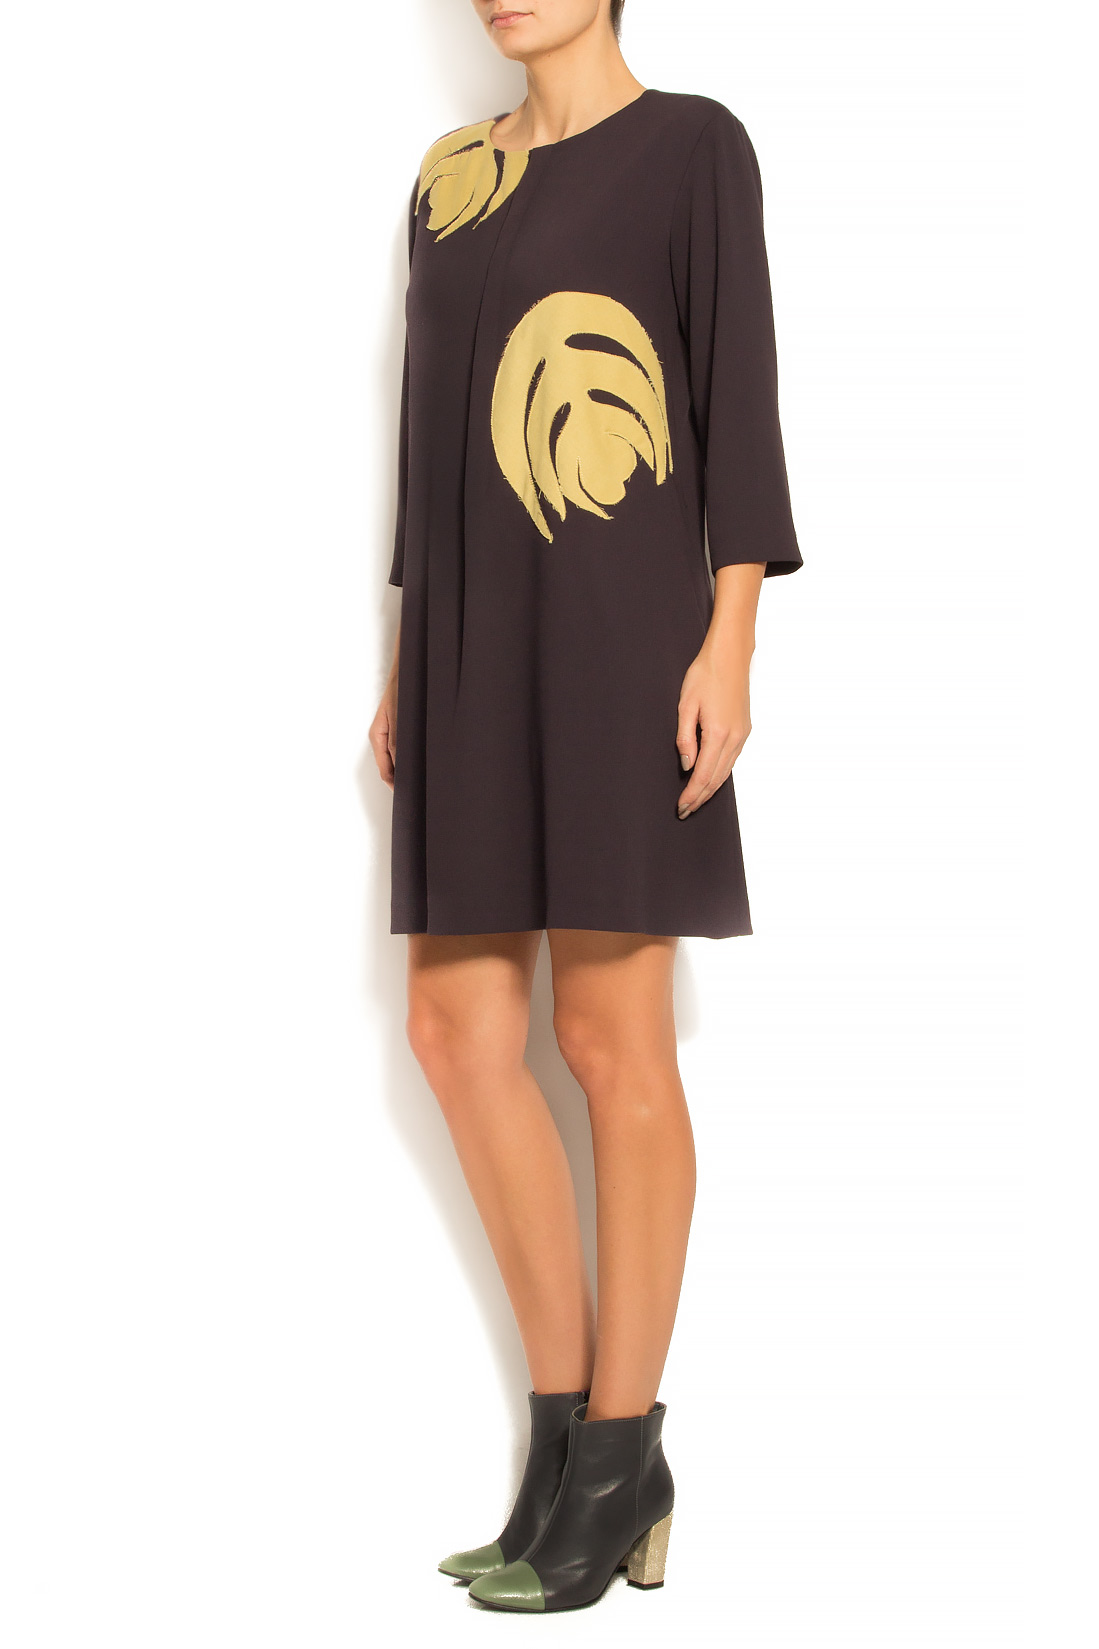 فستان من مزيج القطن و الصوف لينا كريفانو image 1